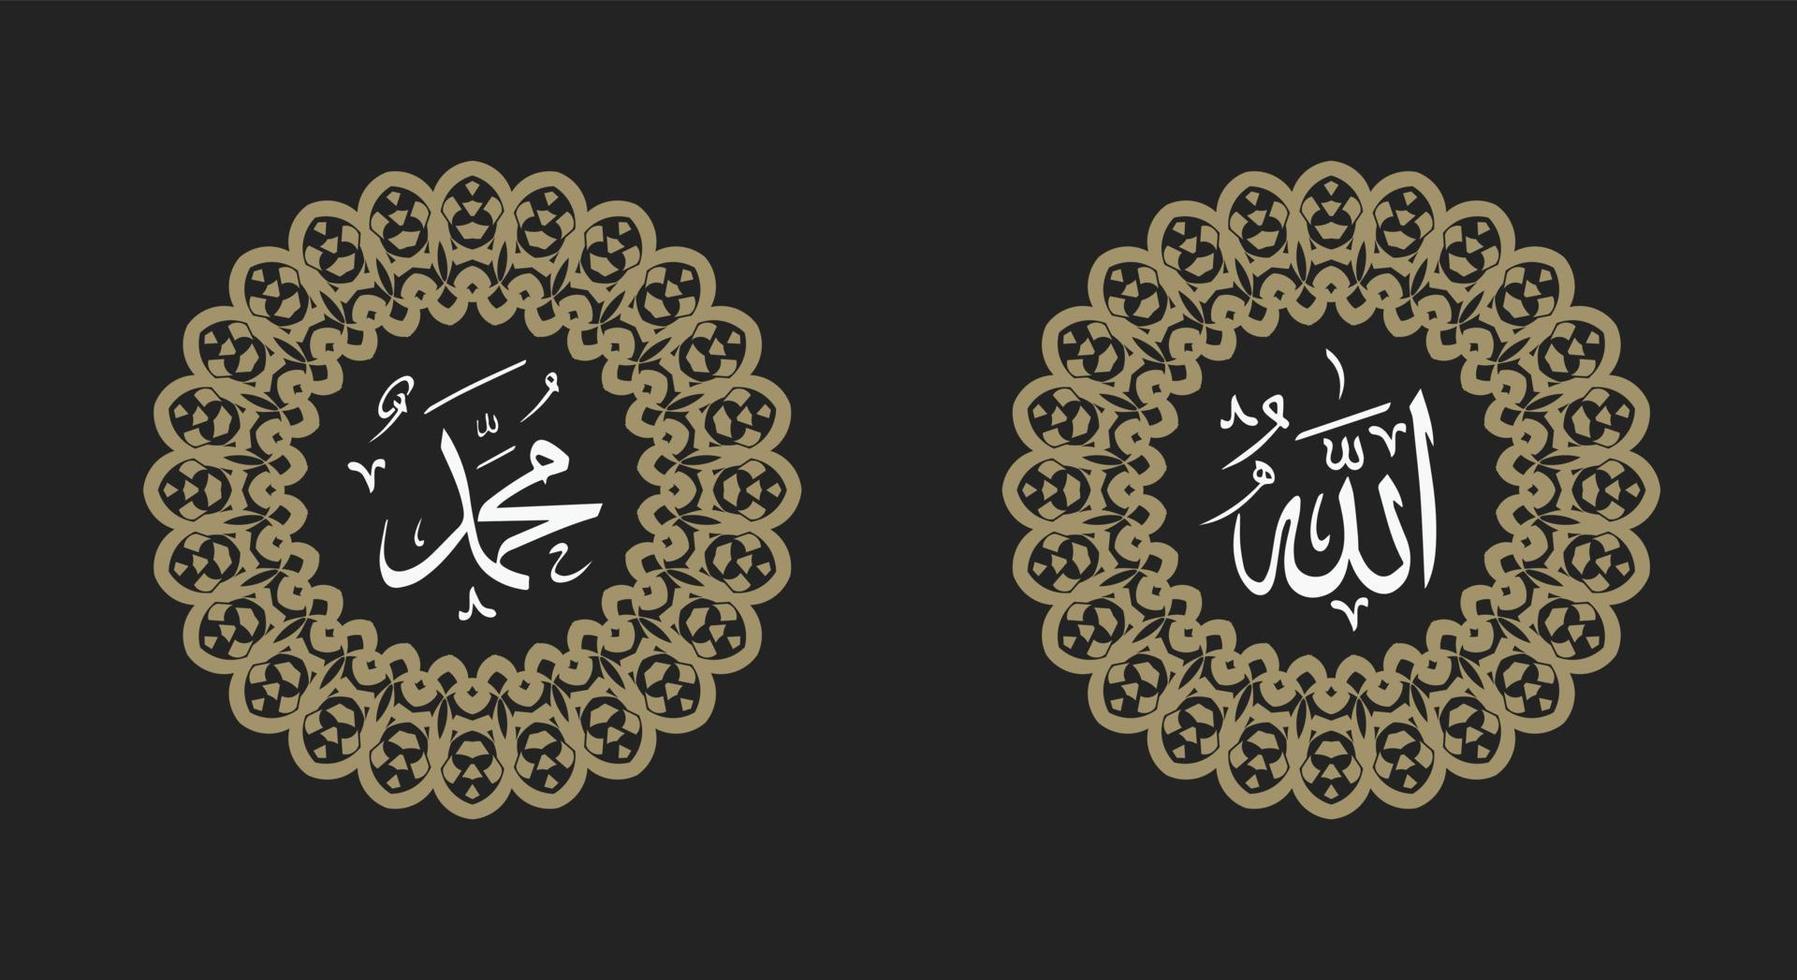 kalligrafie van allah en profeet mohammed. ornament op witte achtergrond met retro kleur vector